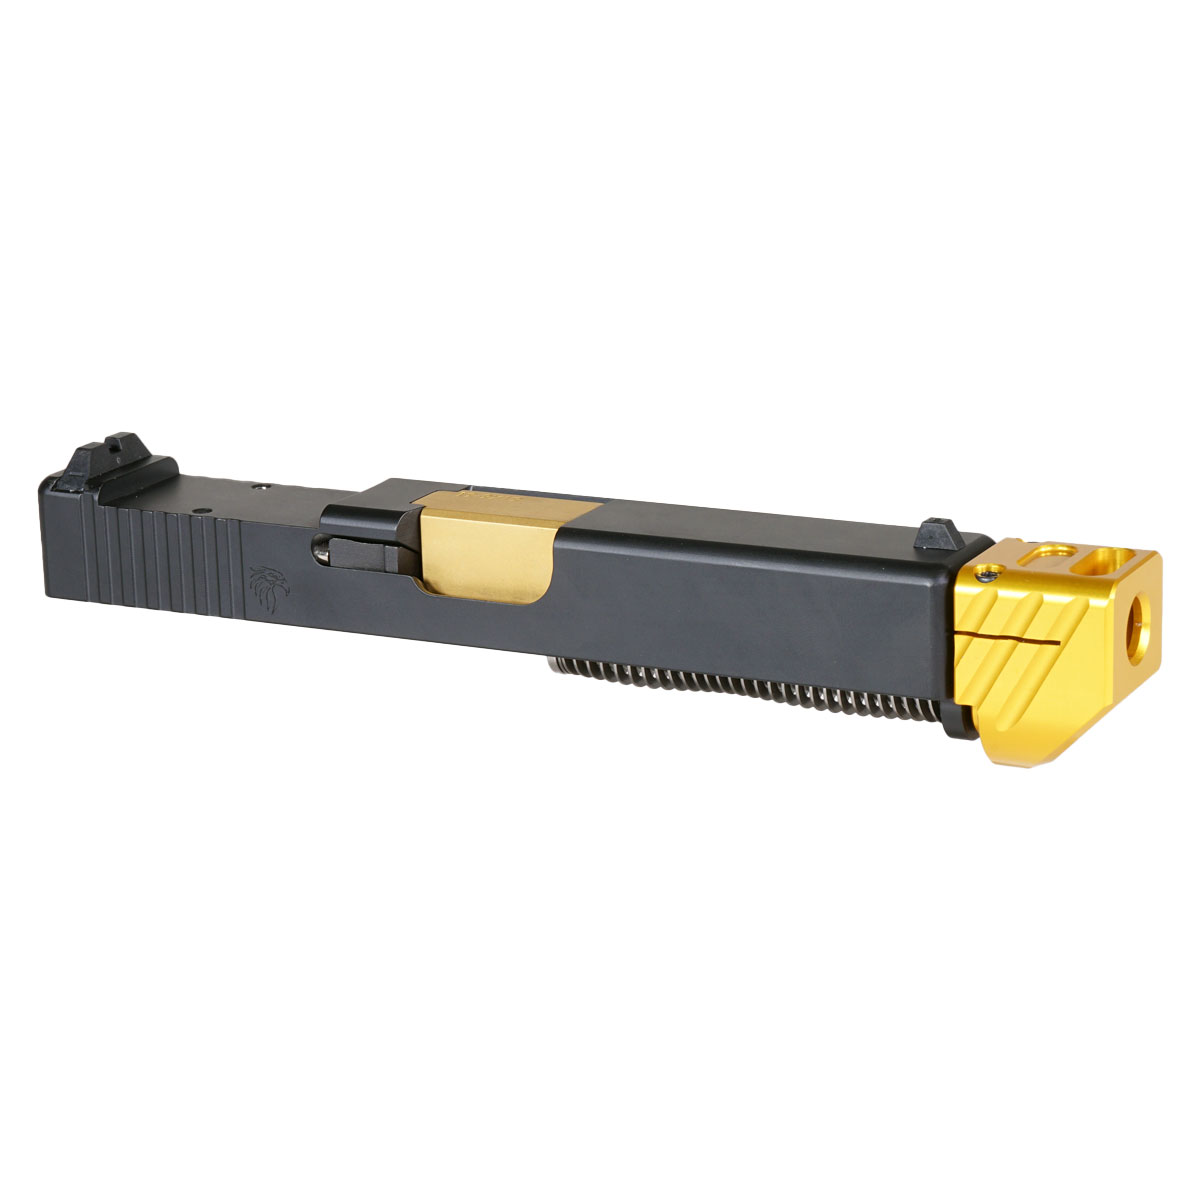 MMC 'Skyflash V2 w/ Gold Compensator' 9mm Complete Slide Kit - Glock 19 Gen 1-3 Compatible